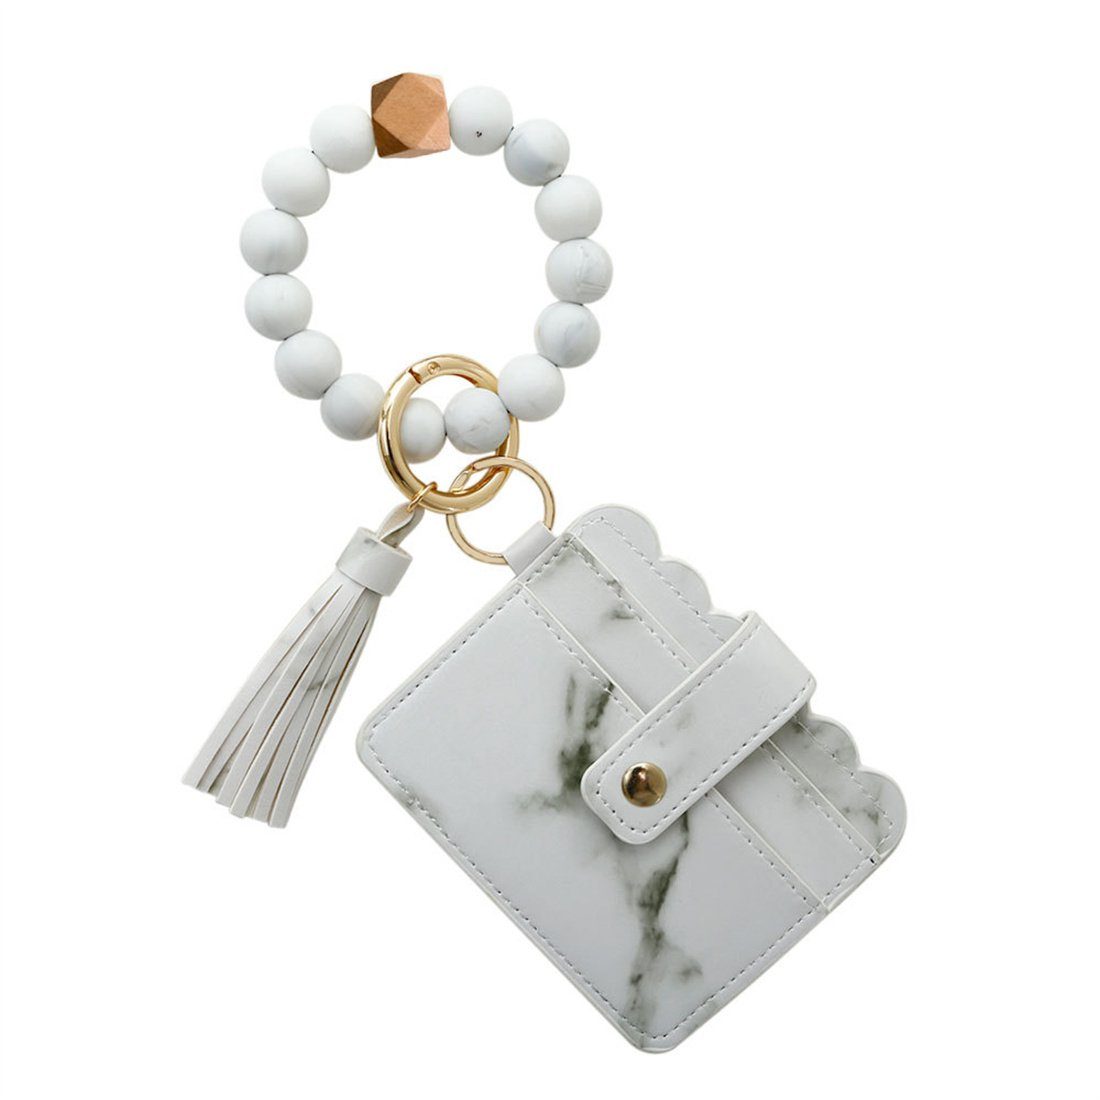 DÖRÖY Schlüsselanhänger Perlenquaste mit Weiß das Handgelenk Silikon-Schlüsselanhänger für